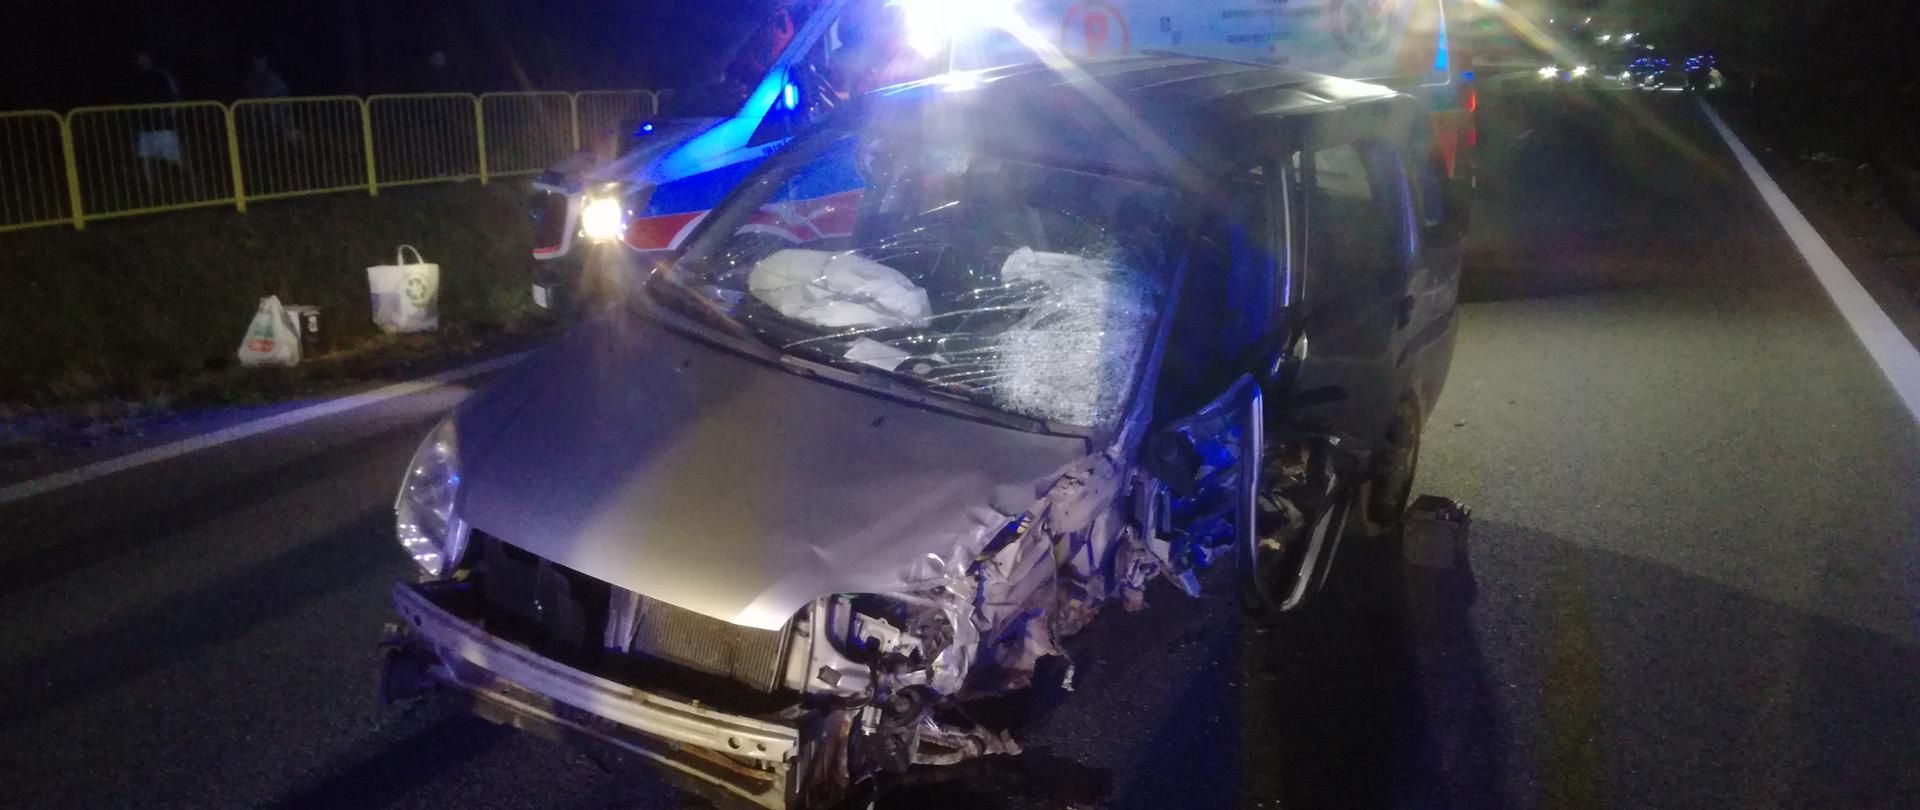 Na zdjęciu zaprezentowany został zniszczony w wyniku zderzenia samochód osobowy marki Subaru, za nim w mroku stoi ambulans. Przy lewym przednim kole widać wyciek płynów ograniczony sorbentem.